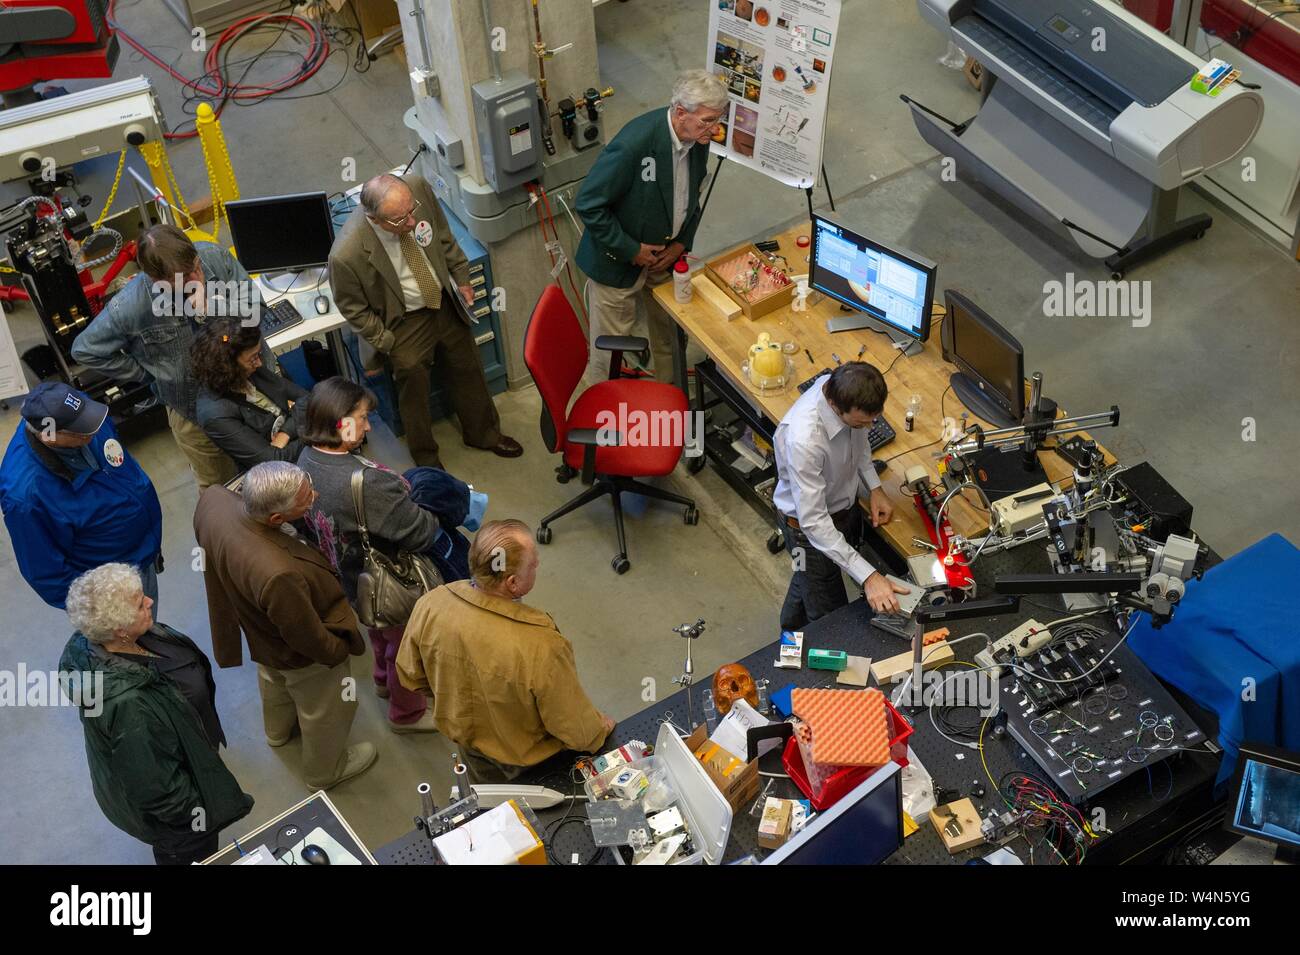 Vue d'ensemble de personnes visiter un laboratoire de développement de la robotique dans la Whiting School of Engineering de l'Université Johns Hopkins, Baltimore, Maryland, le 10 avril 2010. À partir de la collection photographique de Homewood. () Banque D'Images